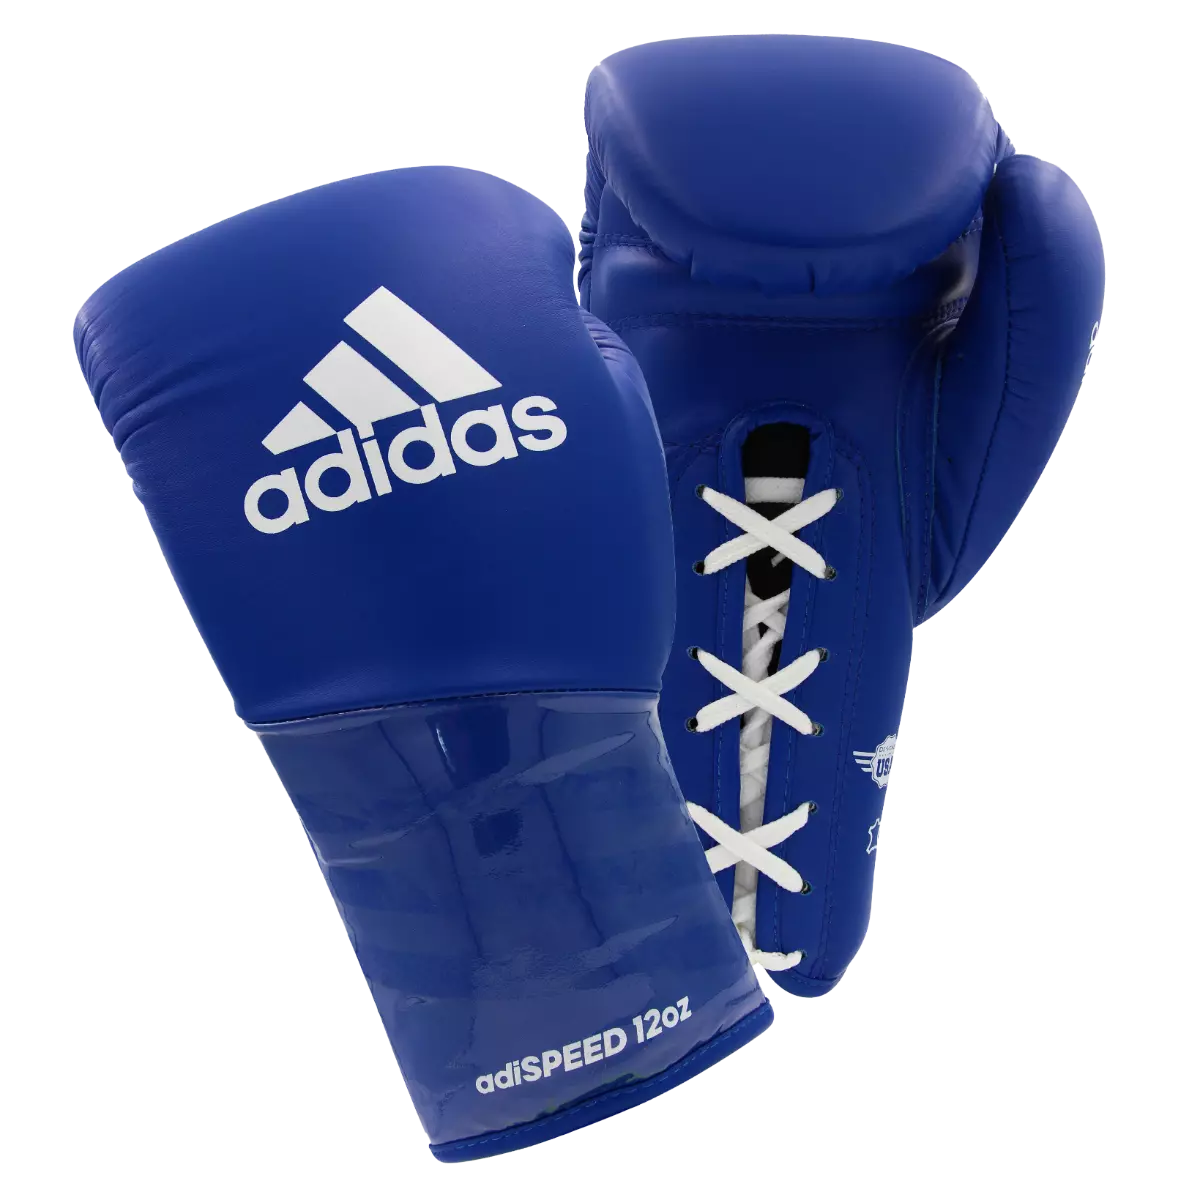 adidas Adispeed Pro Lace Up Boxing Gloves Leather - Budo Online